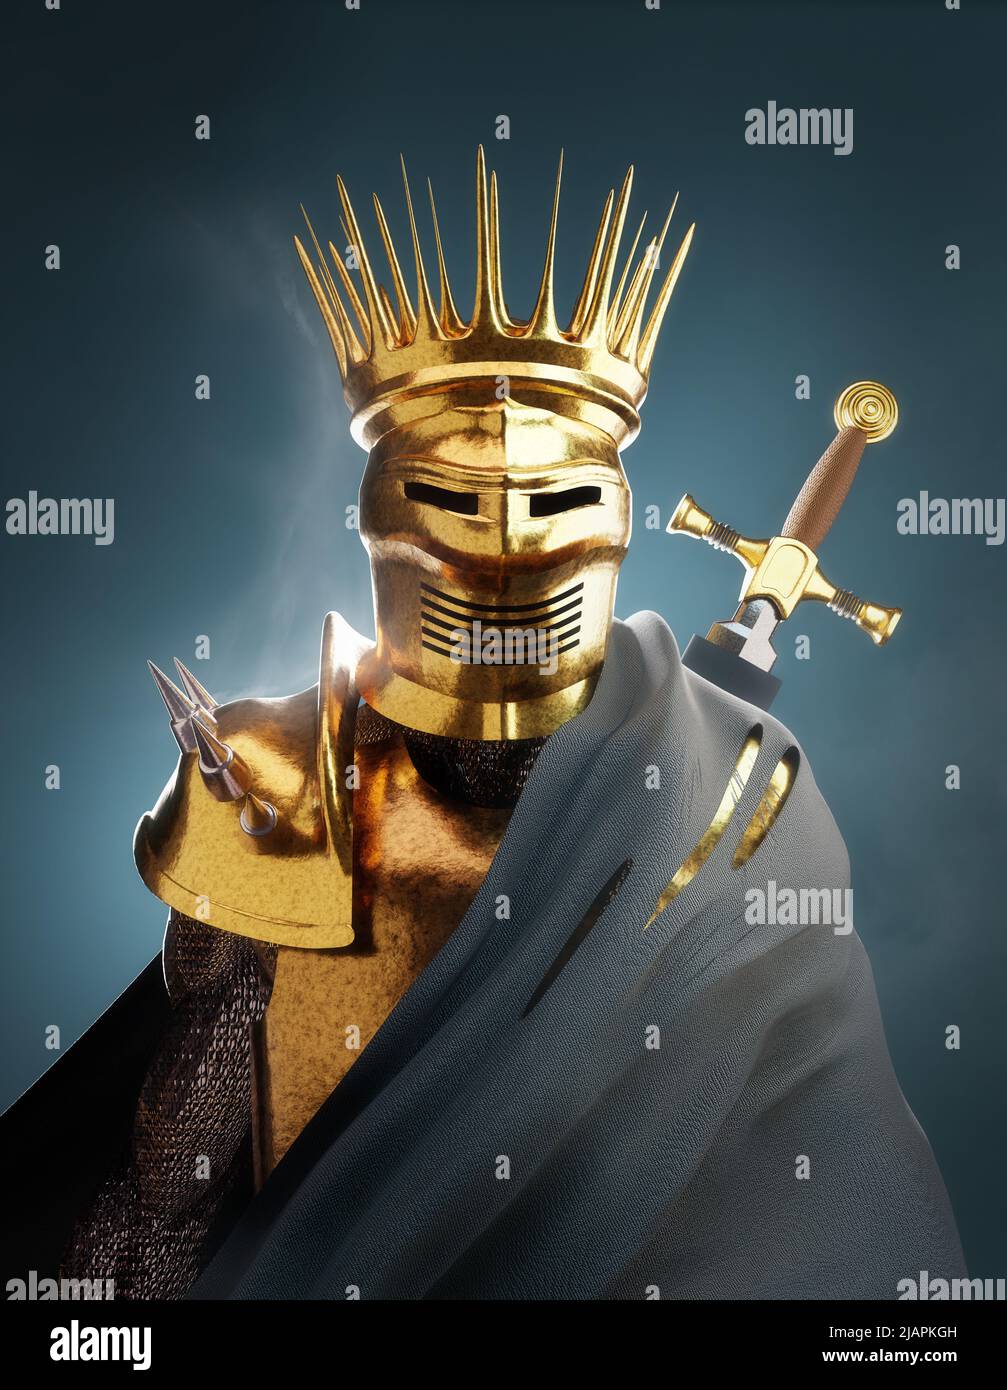 Un rey de caballeros con un traje de armadura de oro, retrato de ilustración del guerrero medieval 3D Foto de stock